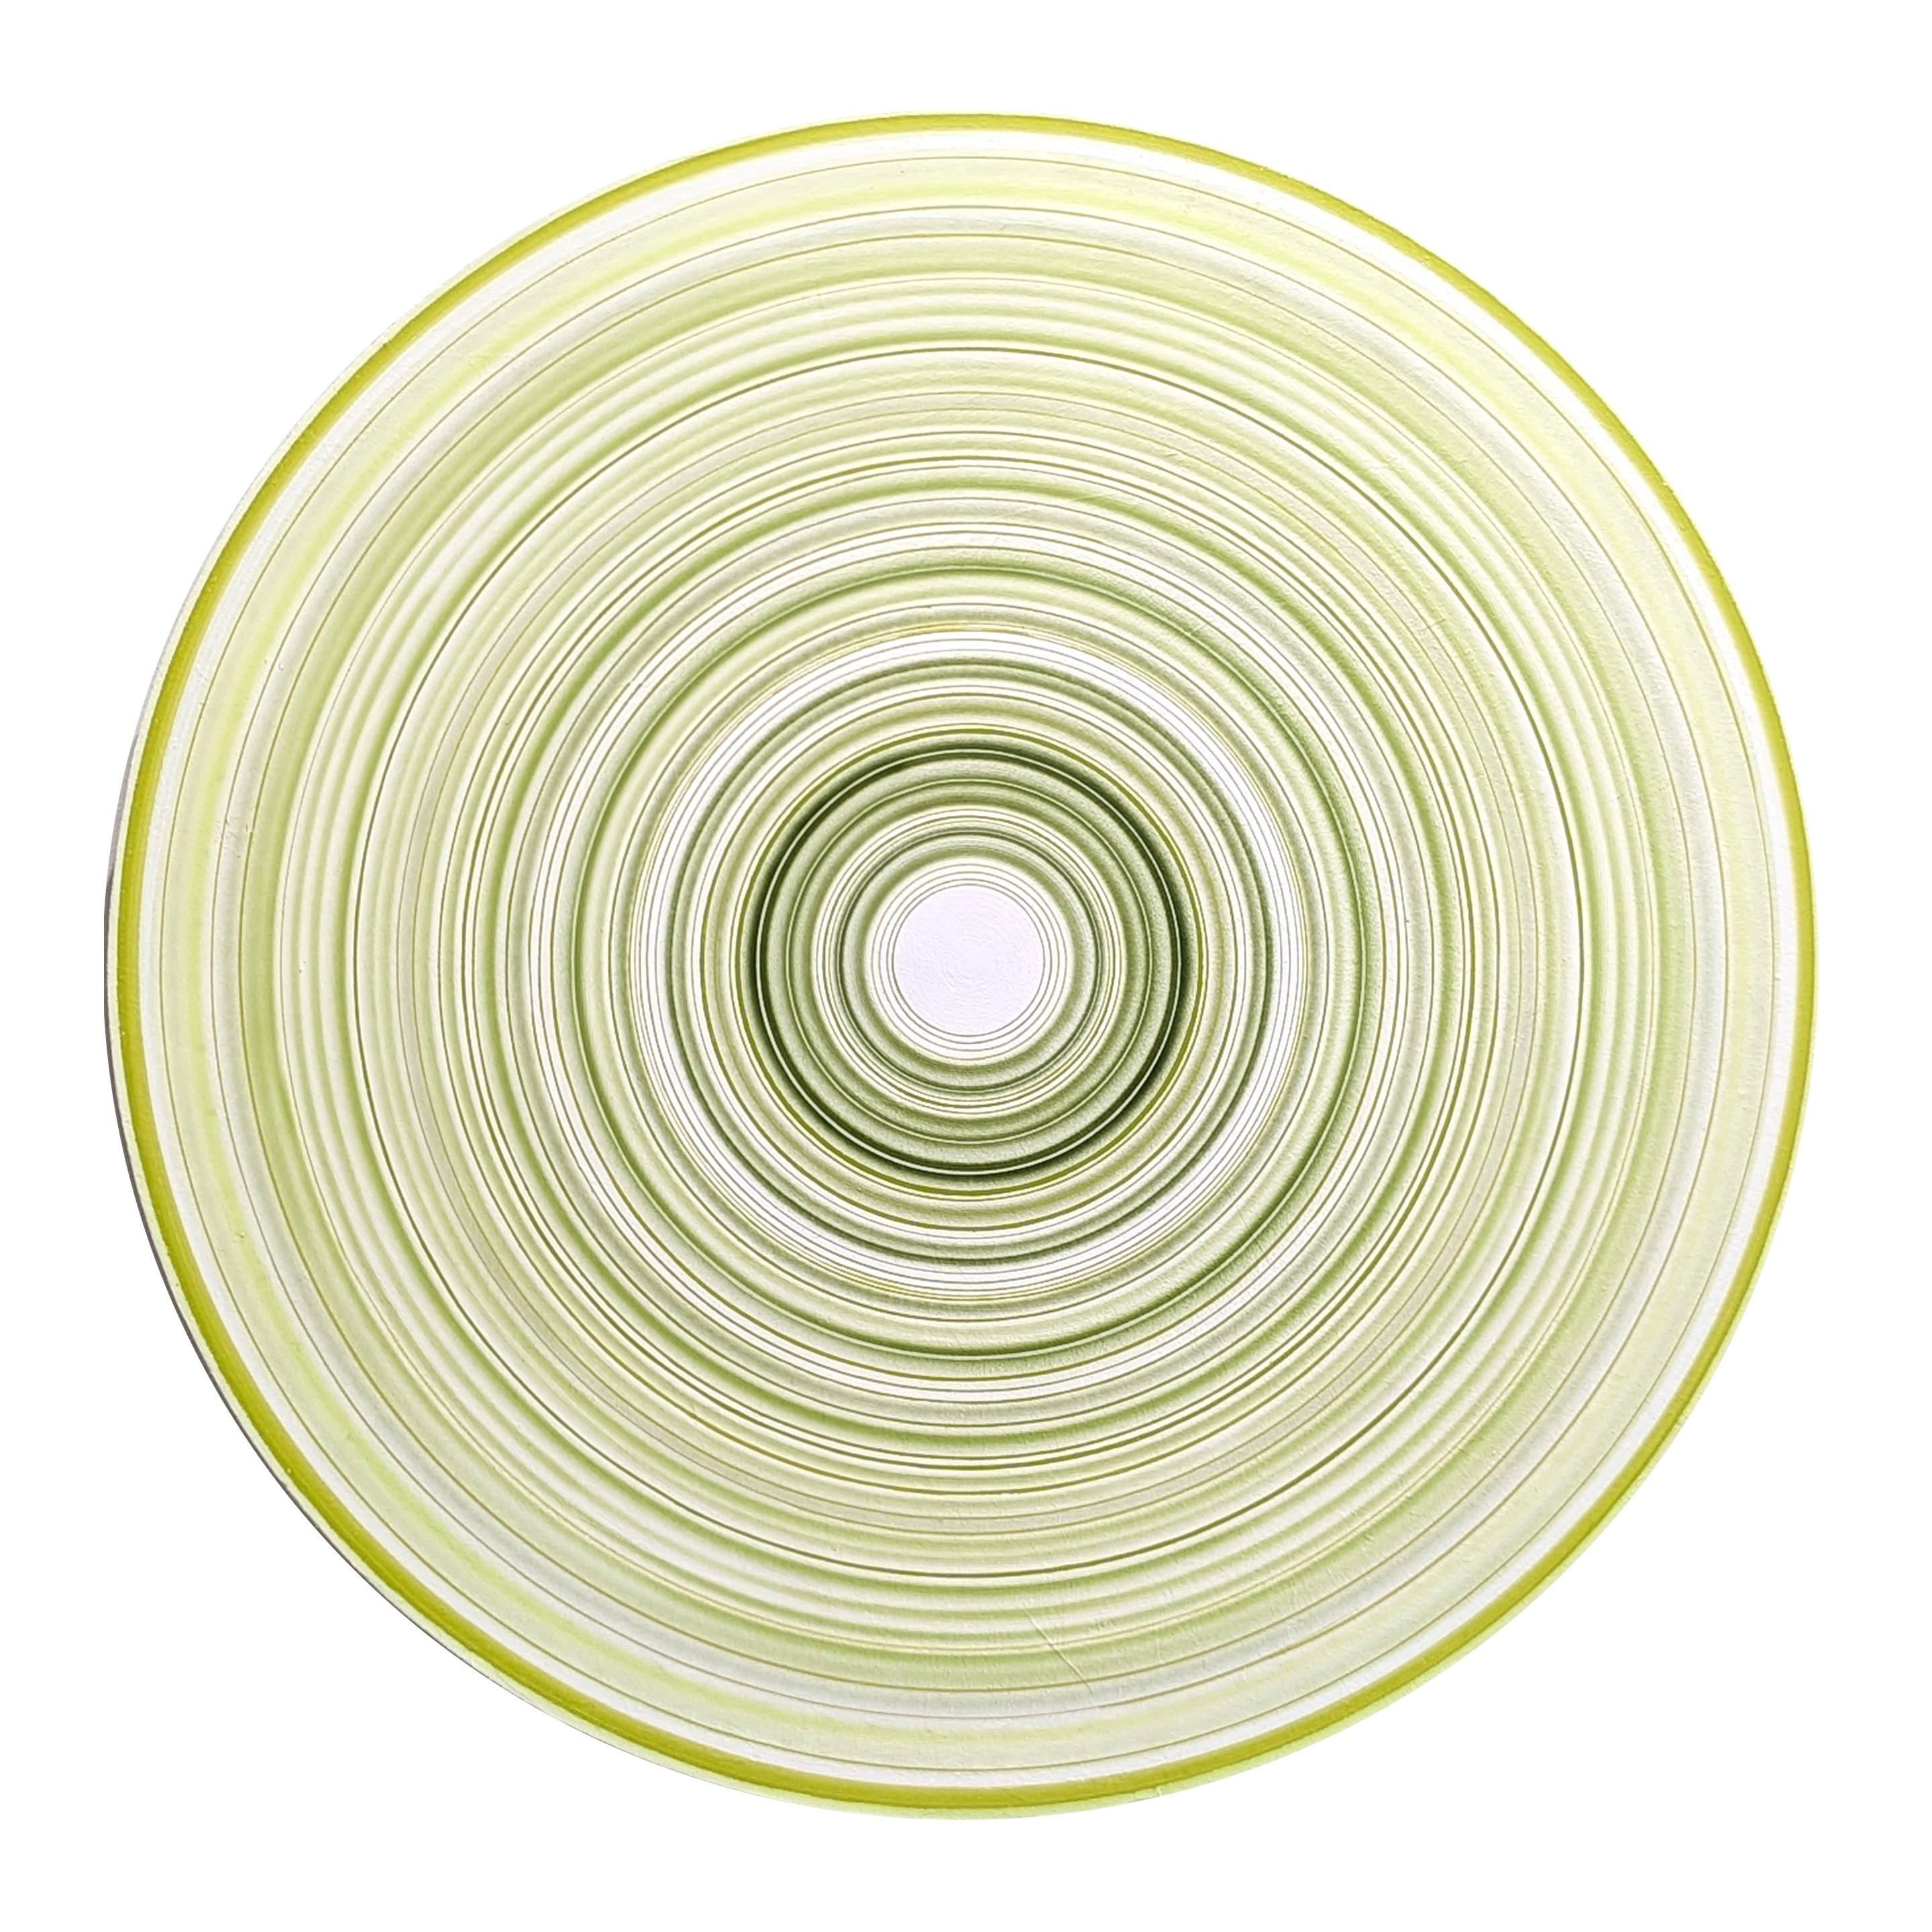 "Firestarter" Peinture abstraite contemporaine de cercles concentriques verts et blancs